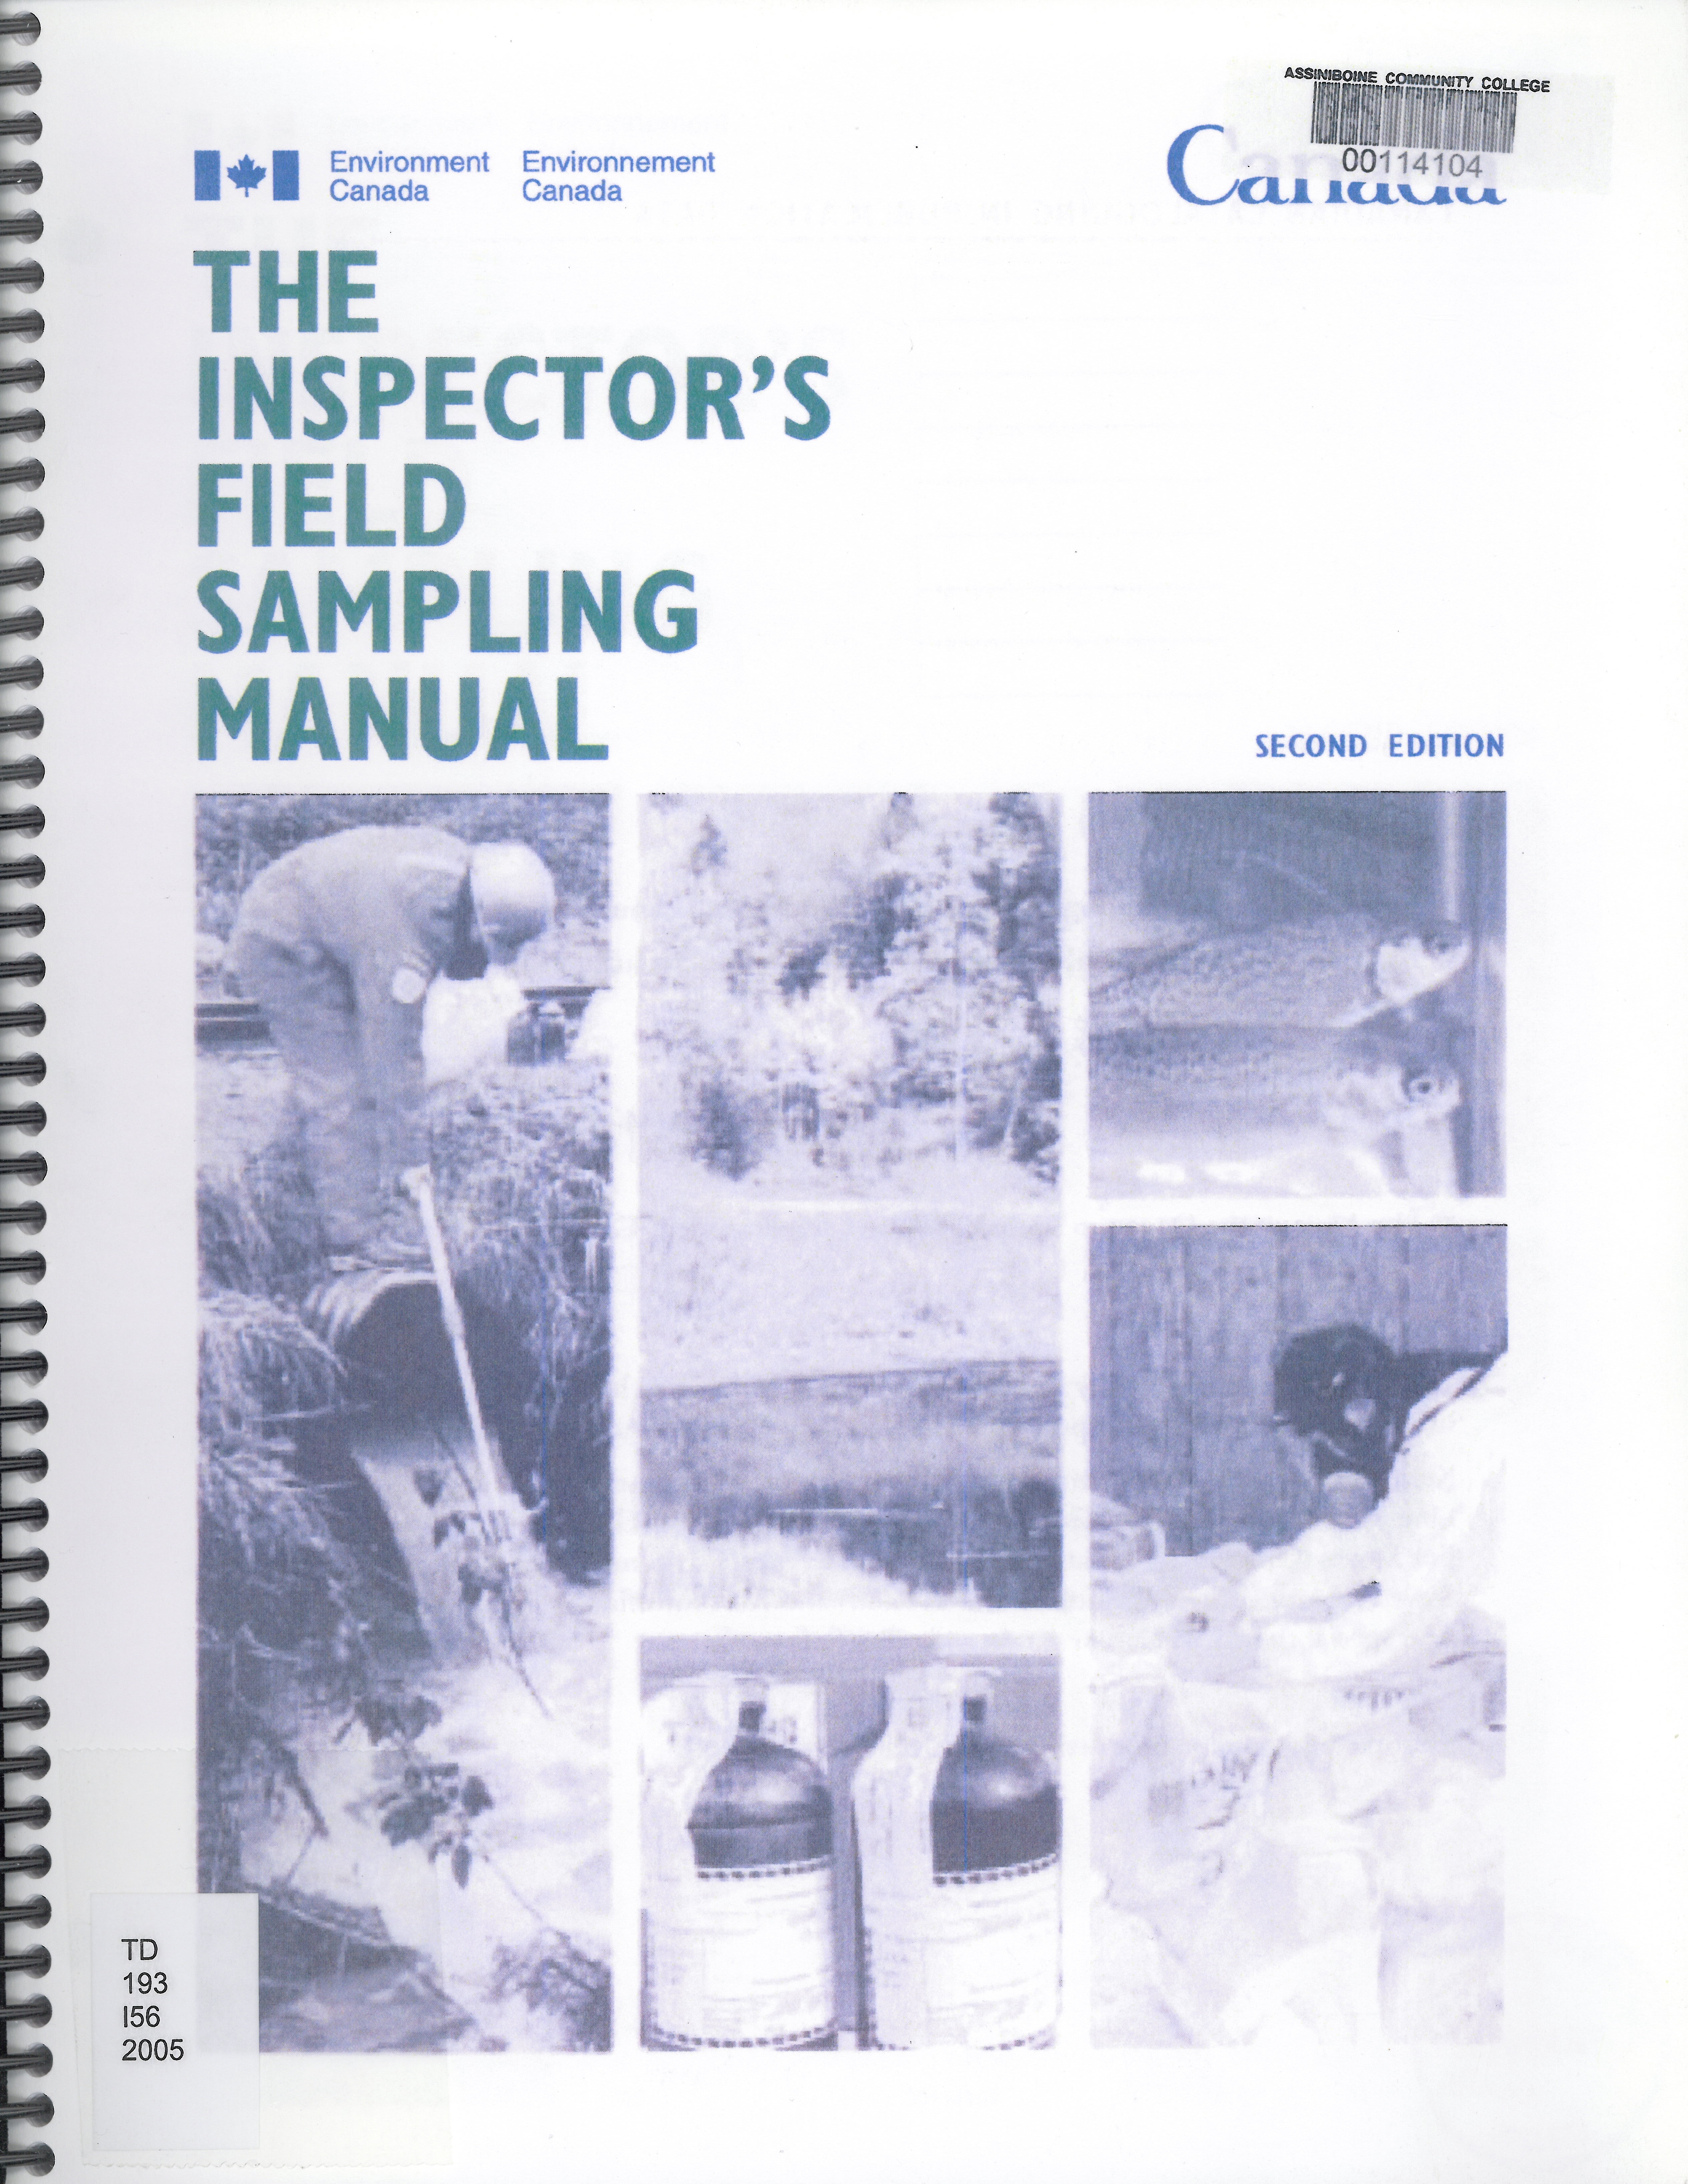 The inspector's field sampling manual